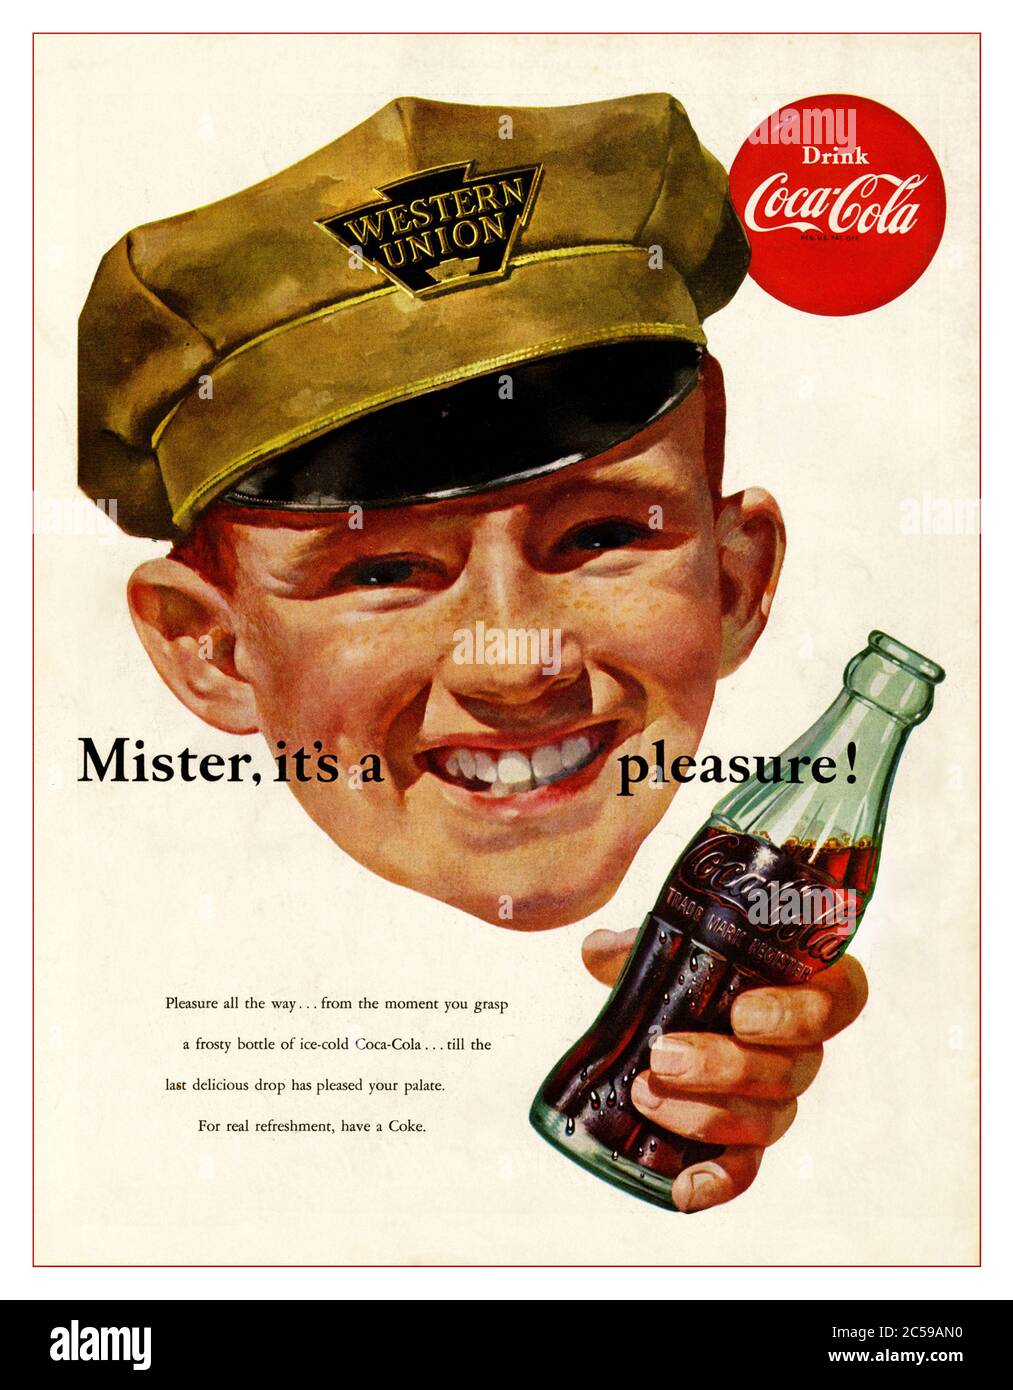 1952 Coca-Cola Drinks Publicité avec une casquette souriante portant un  homme de livraison Western Union avec une bouteille ouverte de Coca Cola «  Mister ITS a Pleasure » Photo Stock - Alamy